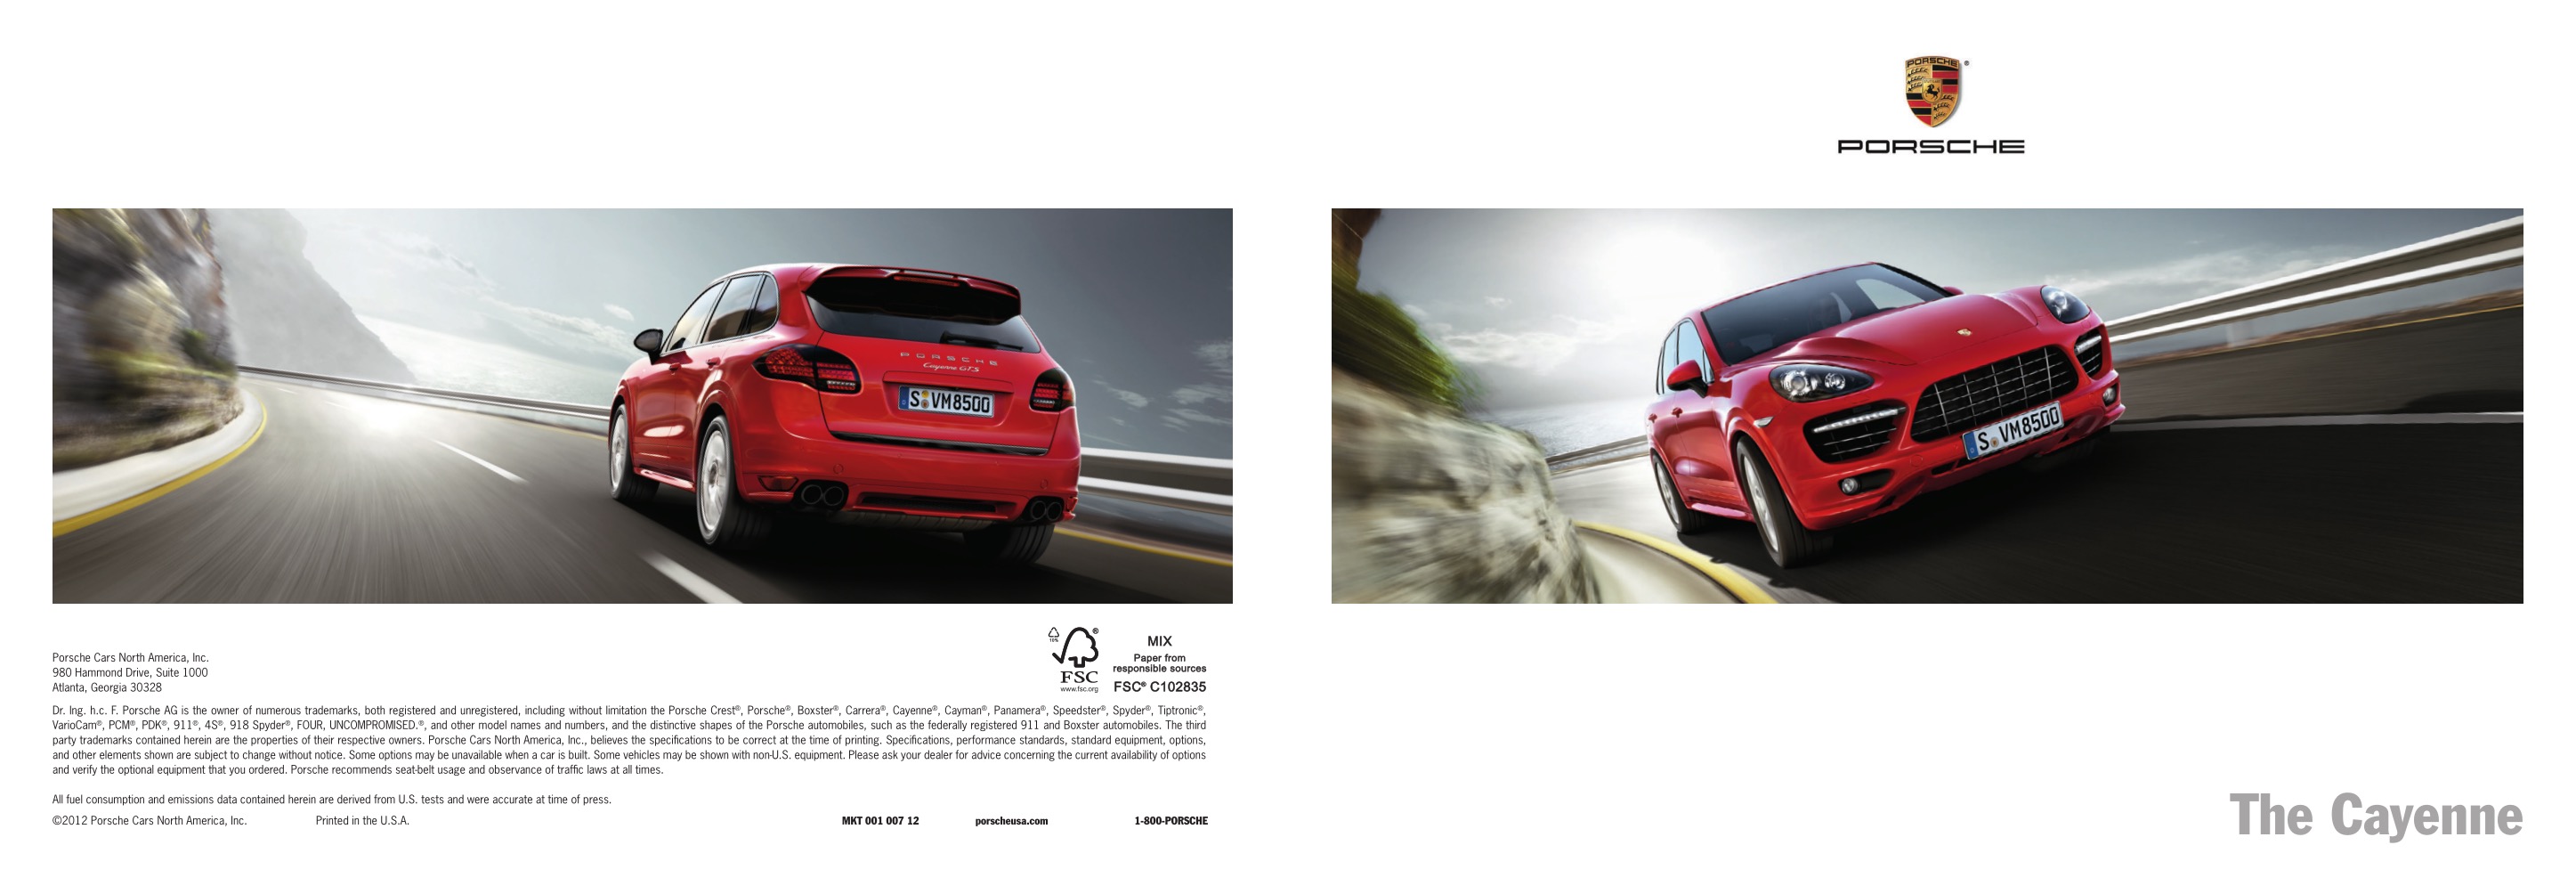 2013 Porsche Cayenne Brochure Page 62